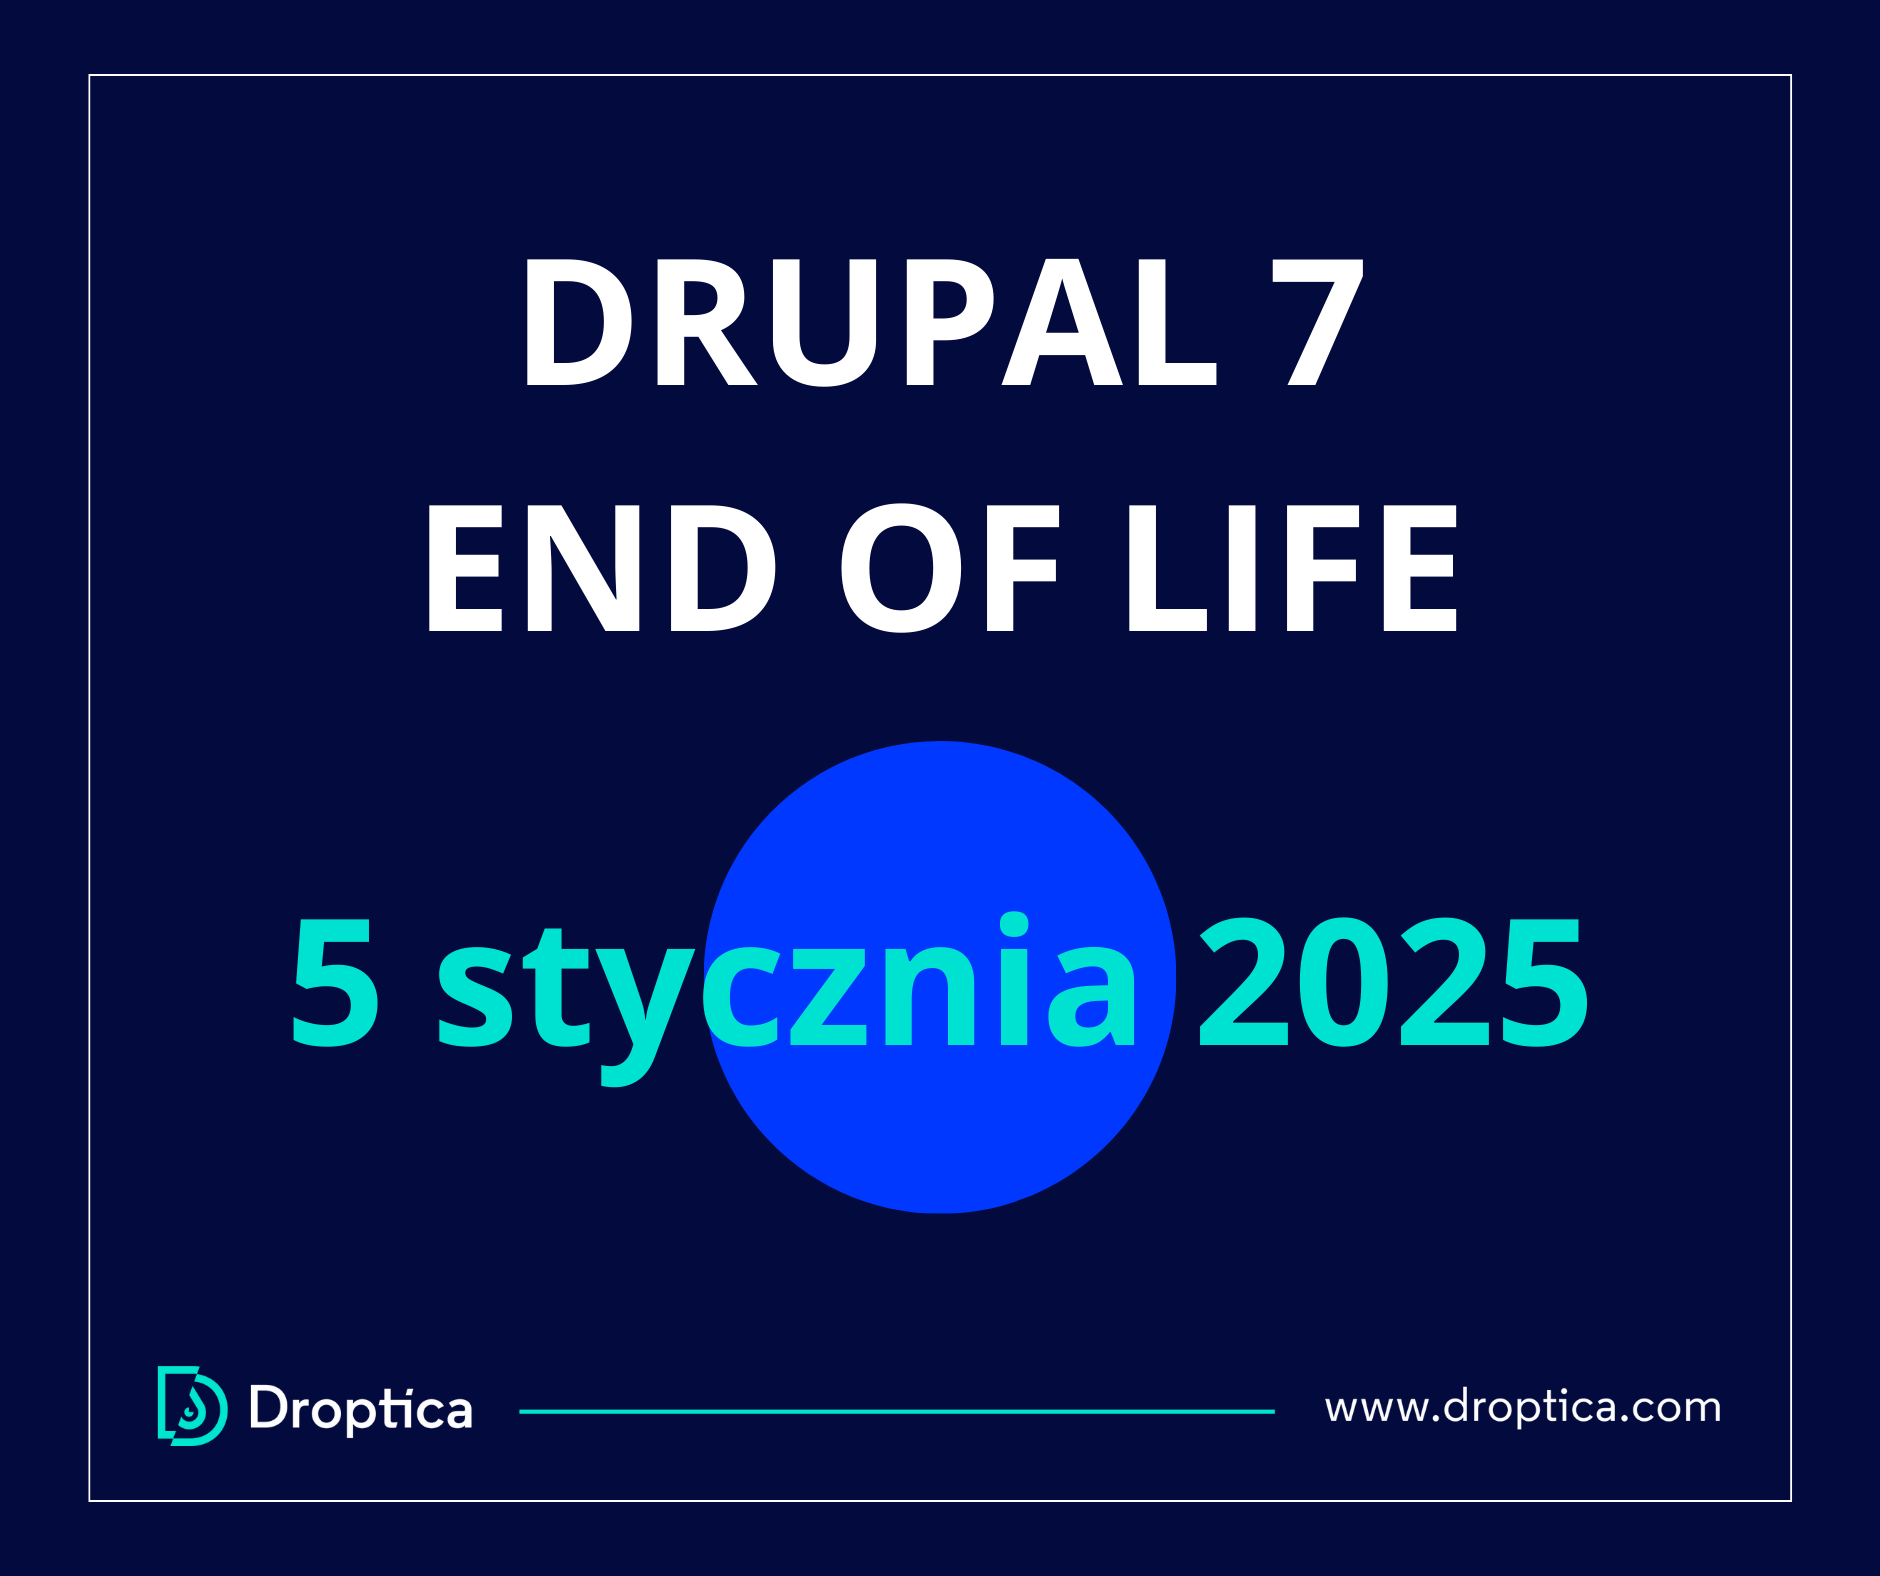 Nowa data dla Drupala 7 end of life została ustalona przez zespół Drupala na 5 stycznia 2025 roku.